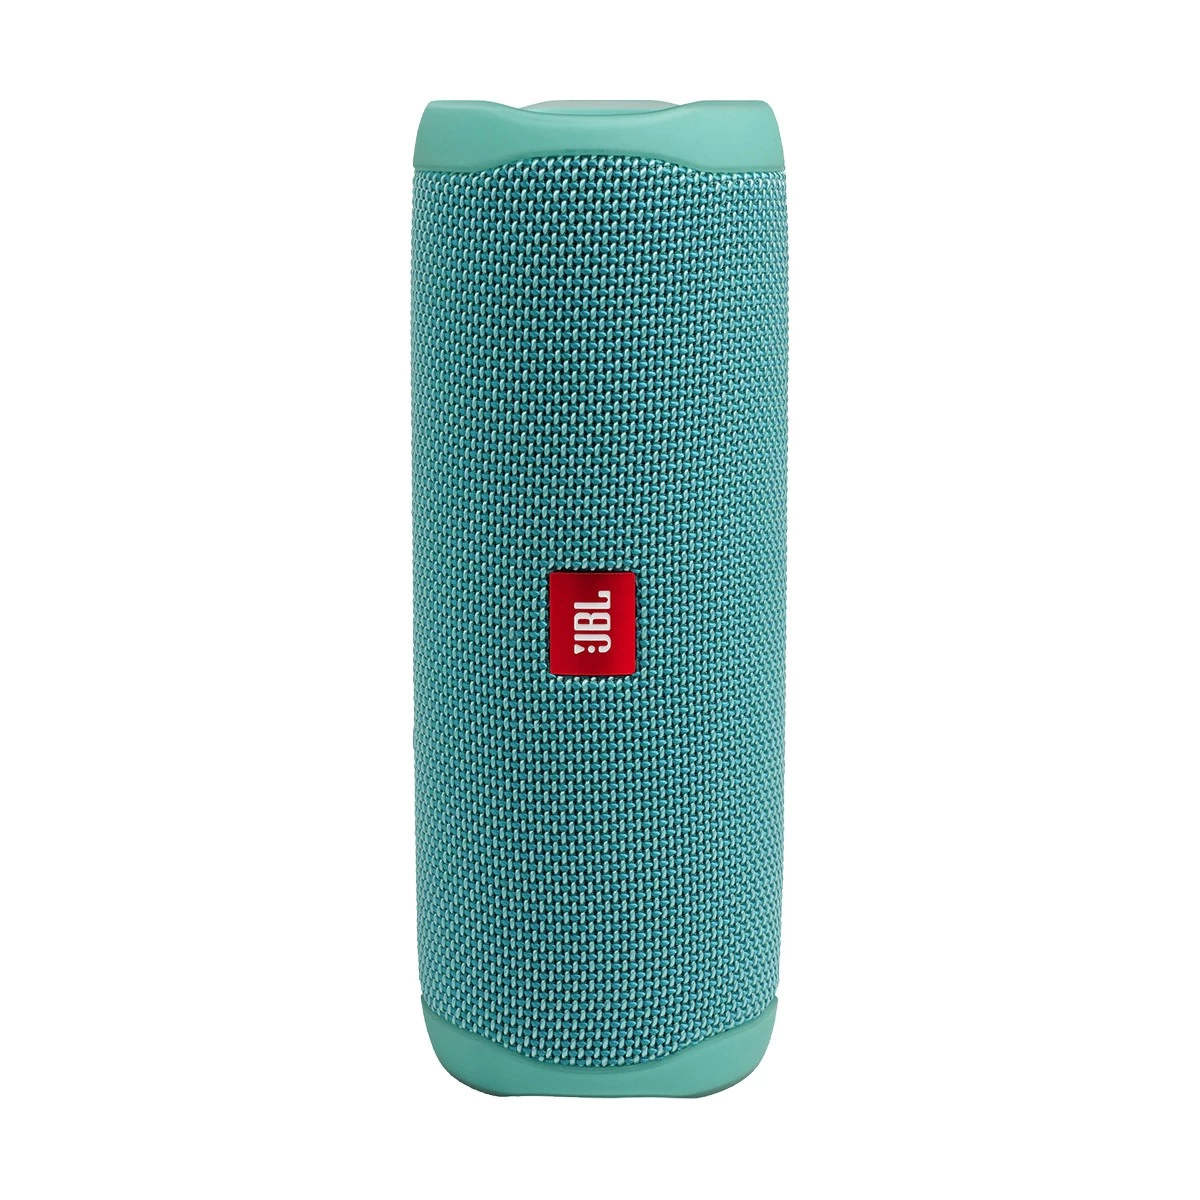 JBL Flip 5 Waterproof Teal Portable Bluetooth Speaker #JBLFLIP5TEALAM